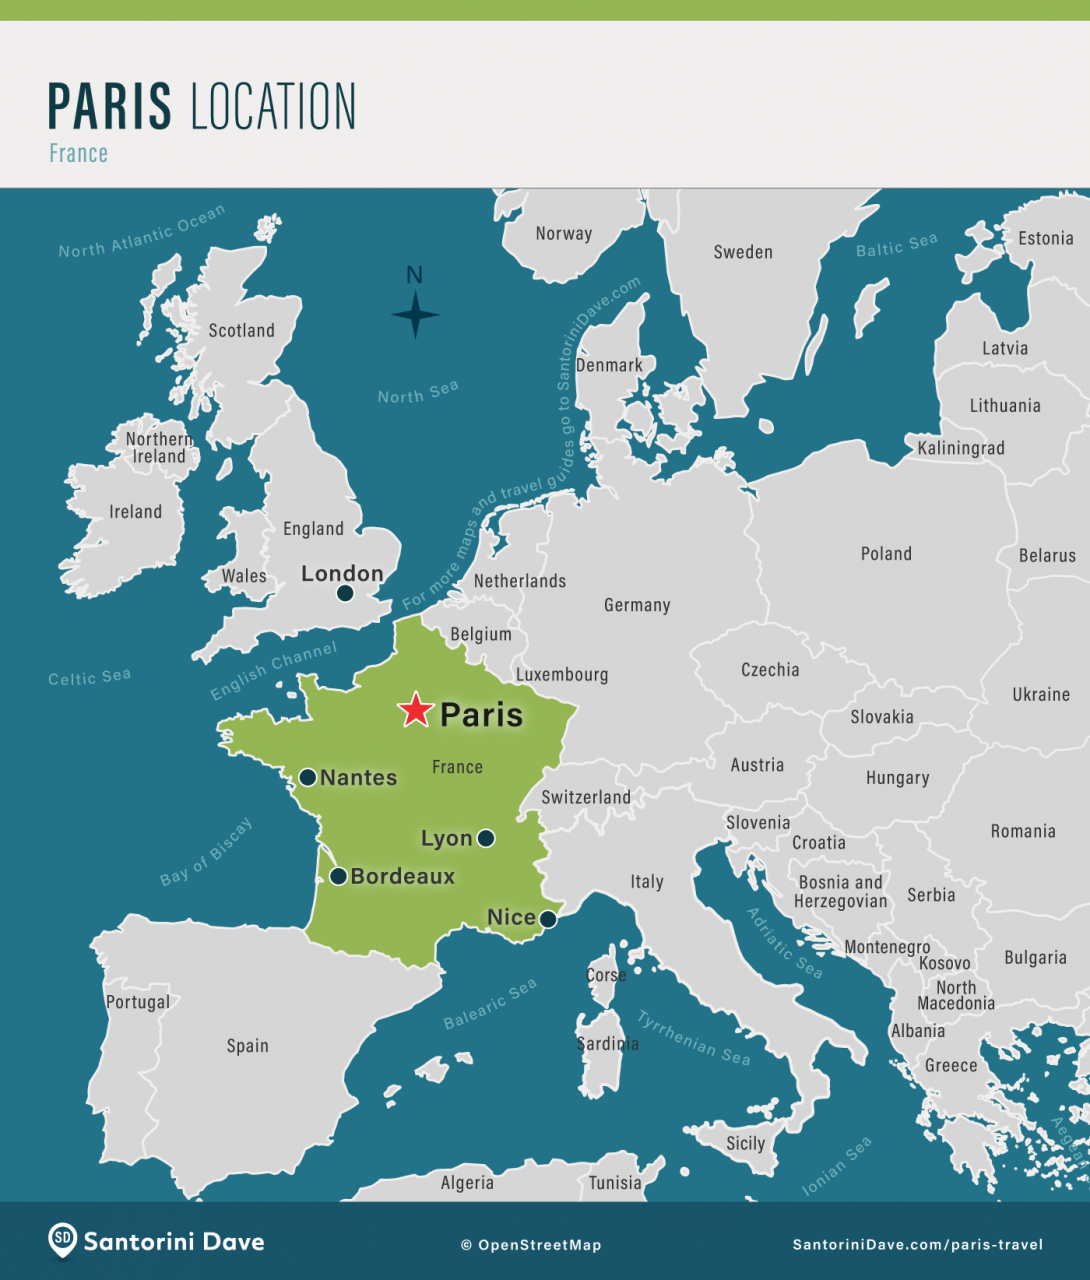 Mapa que muestra la ubicación de París dentro de Francia y la región circundante